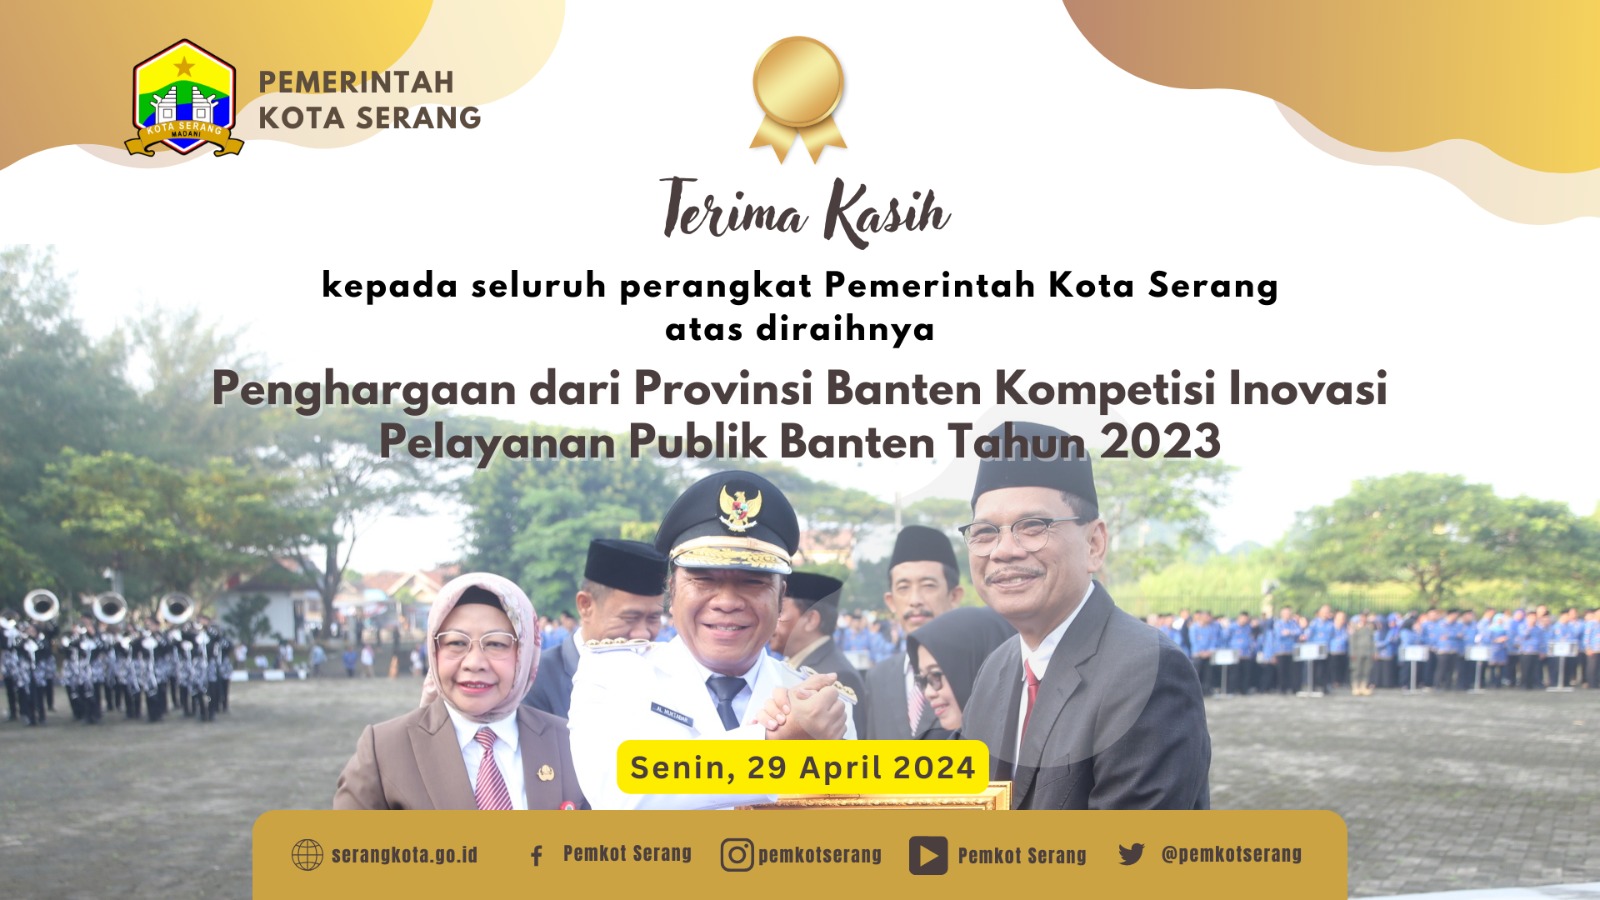 Penghargaan Inovasi Pelayanan Publik Banten Tahun 2023